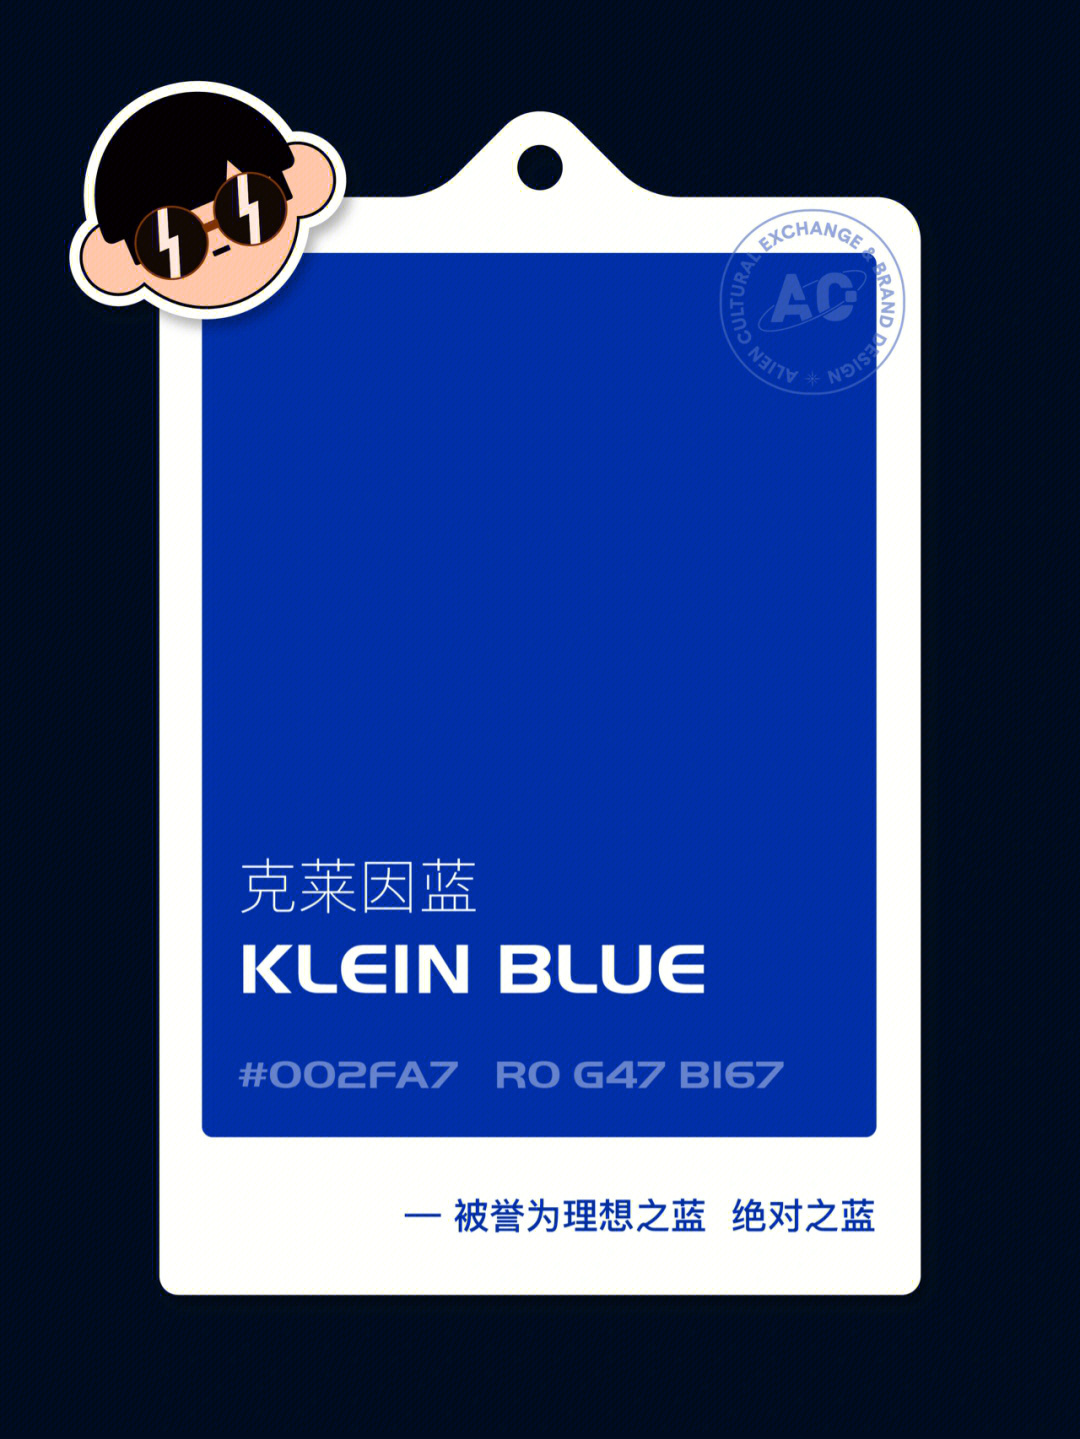 78156997克莱因蓝 klein blue被誉为理想之蓝,绝对之蓝78